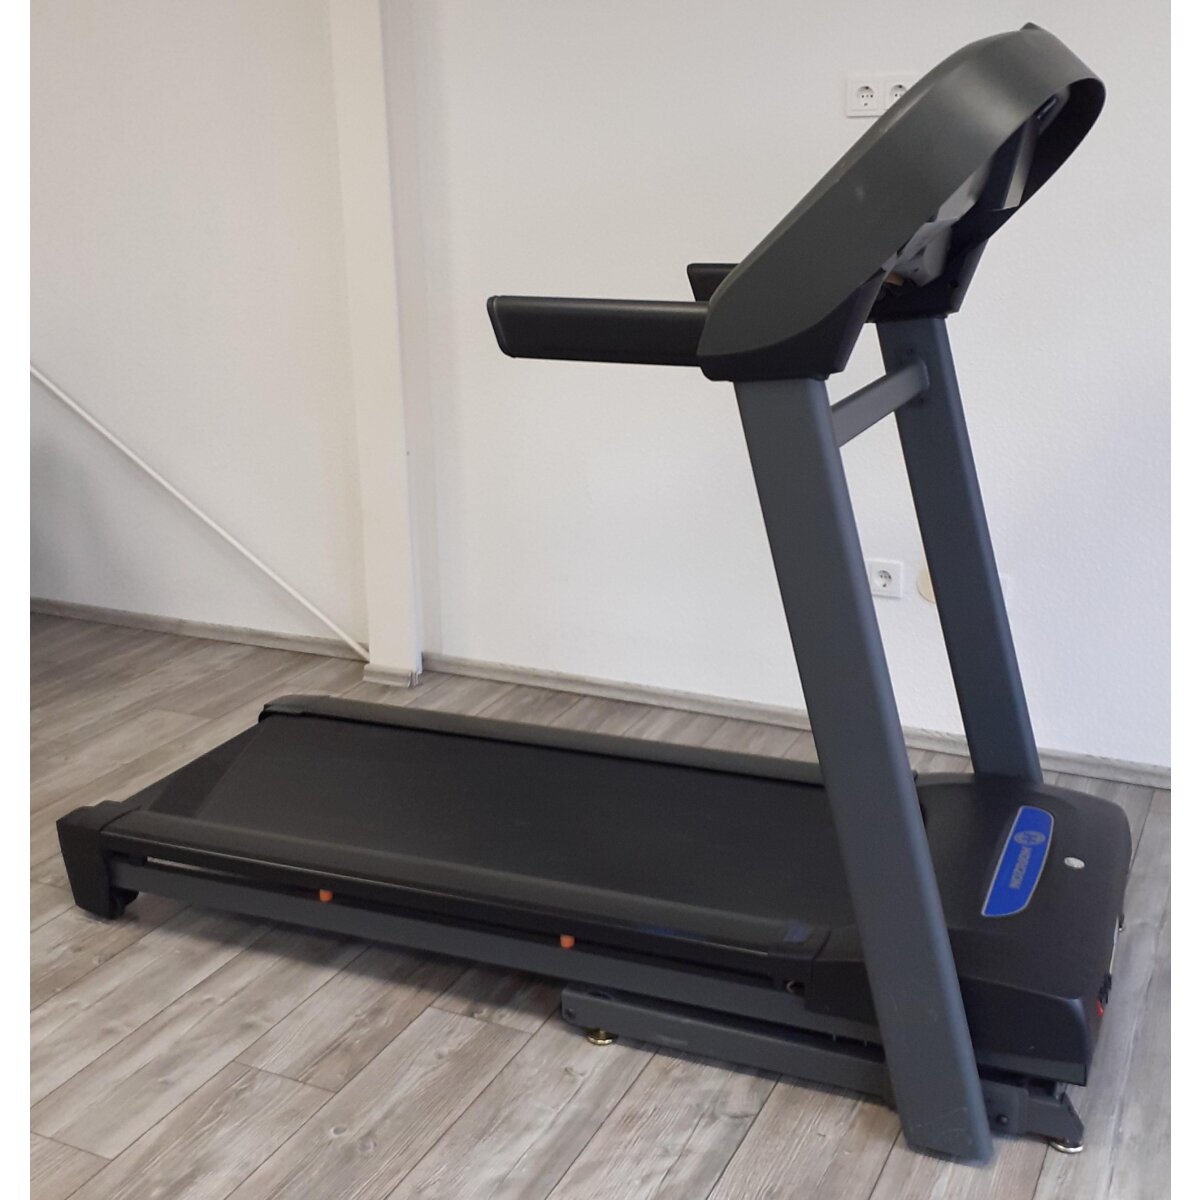 Horizon Fitness Laufband T101 - B-Ware gut, 742,99 €